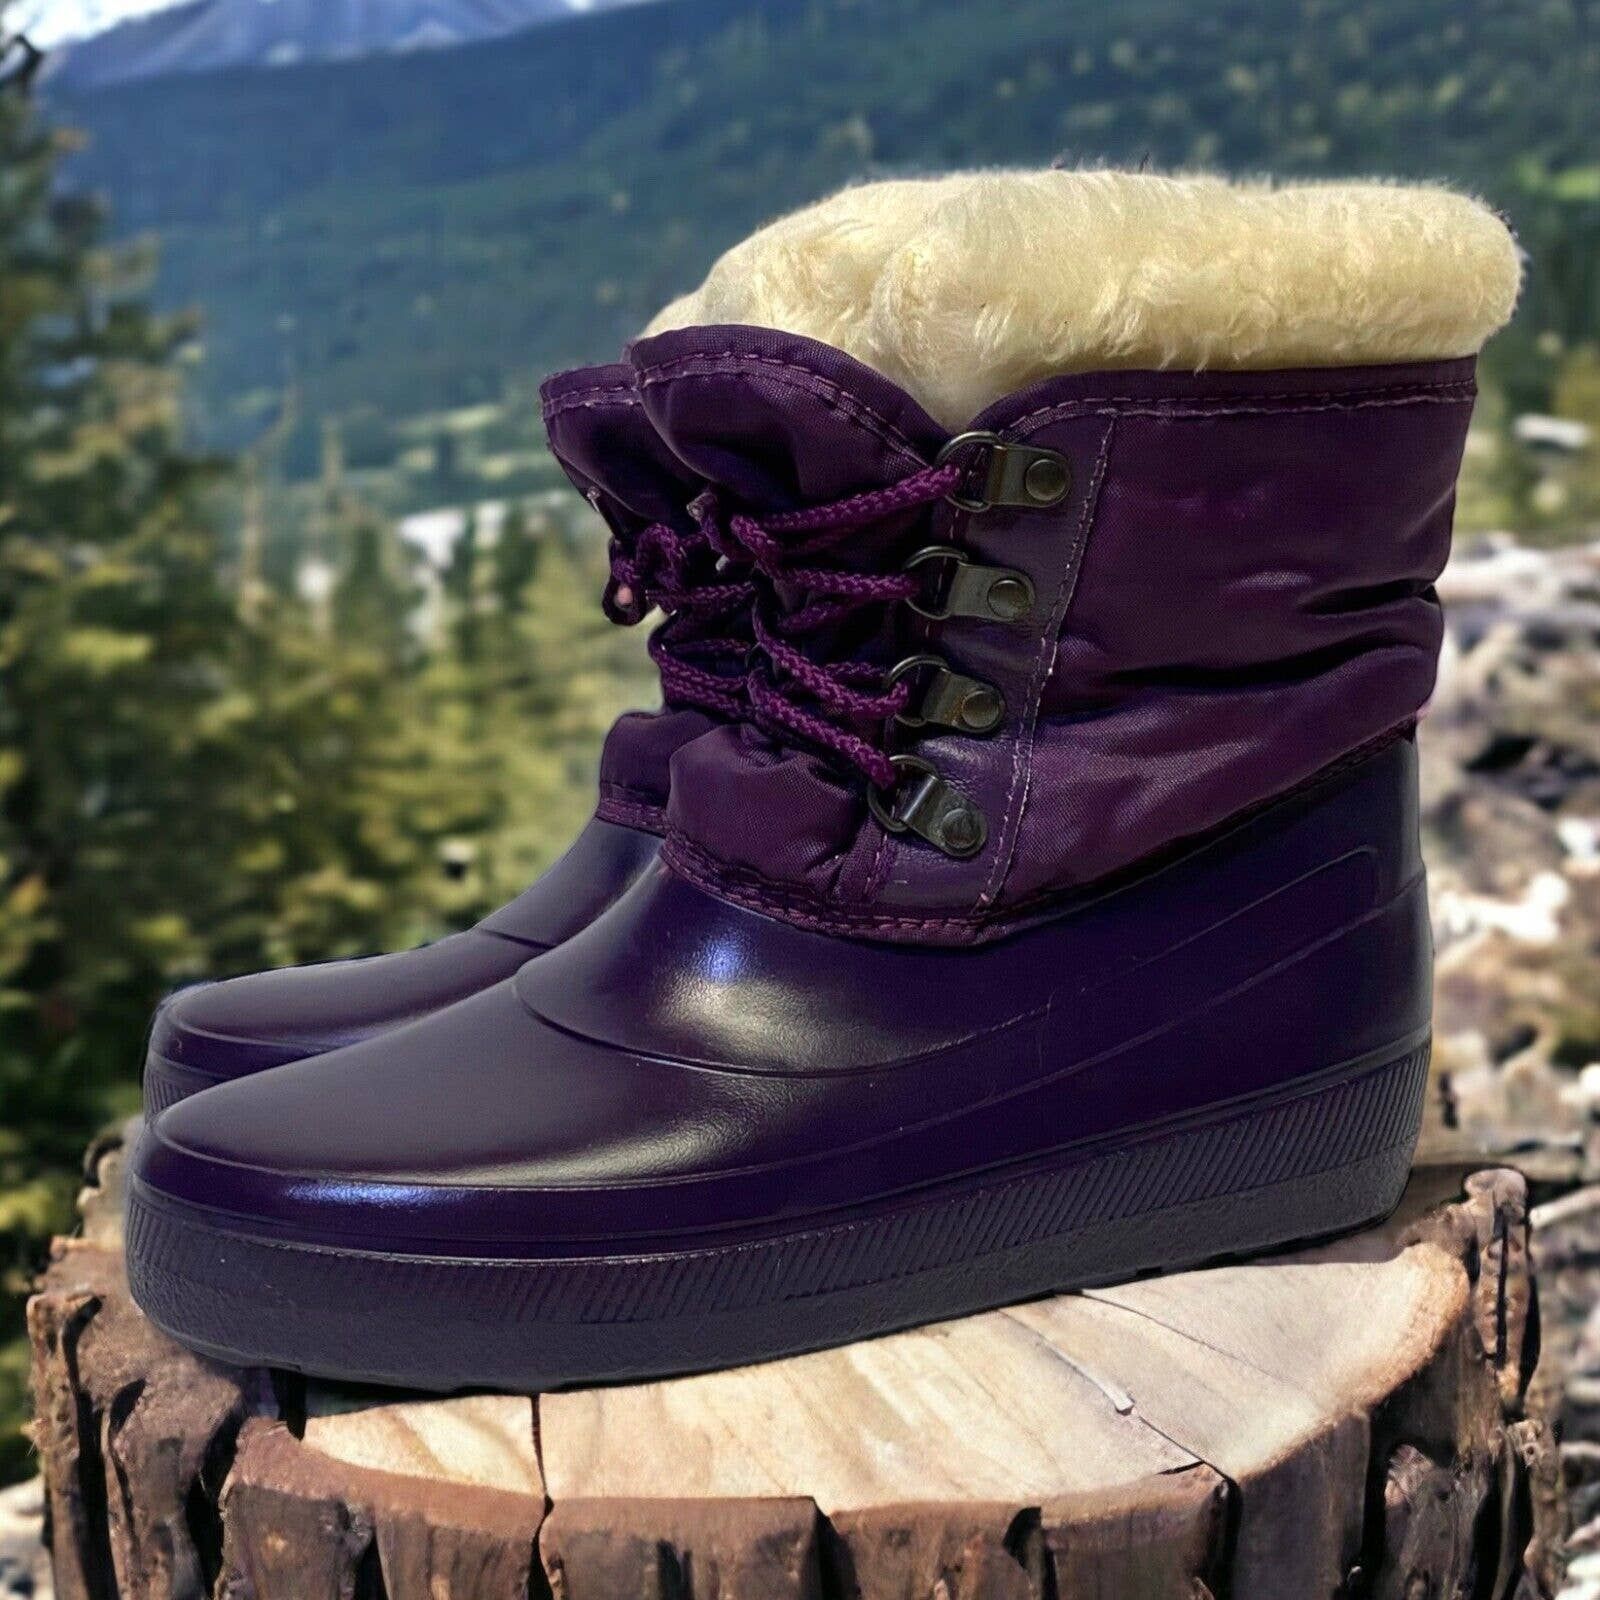 Vintage Vintage Sorel Purple Fur Lined Rubber Winter Rain Snow Boots Size US 5 / IT 35 - 1 Preview